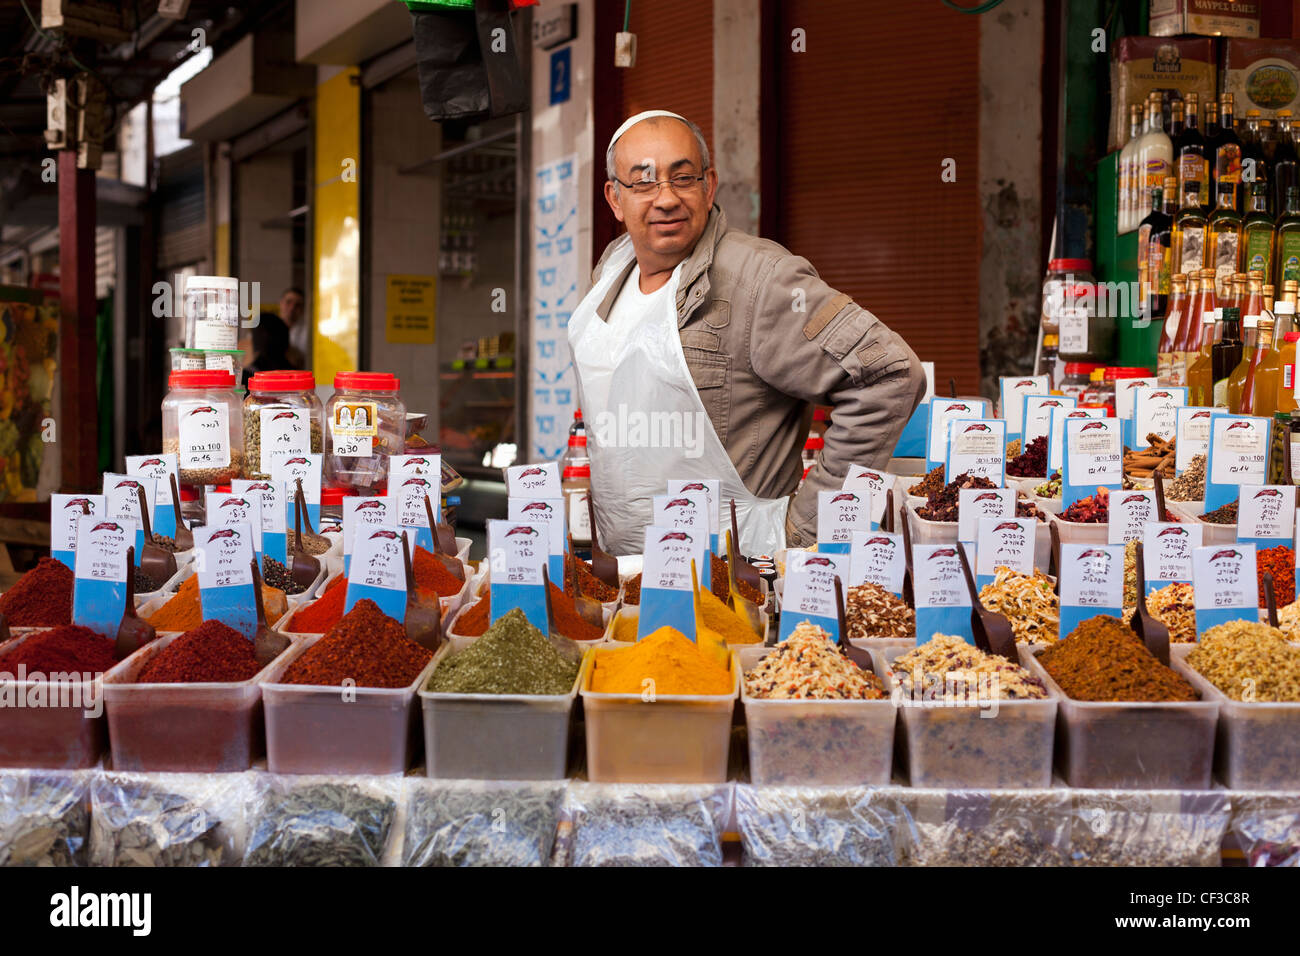 Israël, Tel Aviv,Carmel Market, vendeur d'épices avec des échantillons d'épices fraîches Banque D'Images